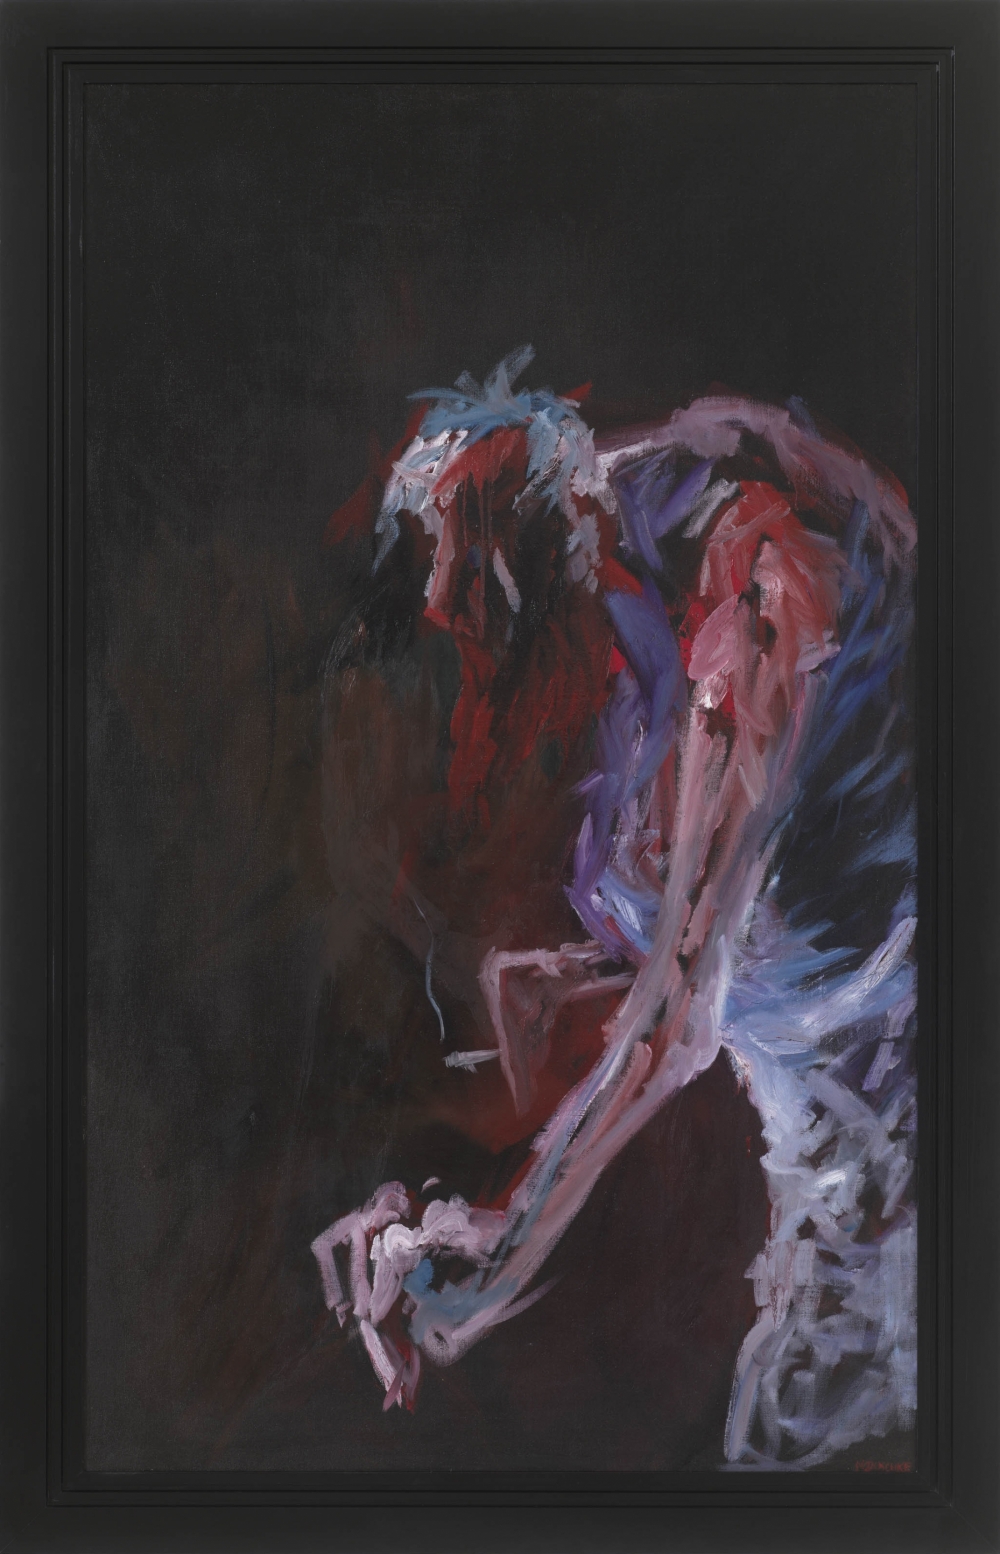 Gemälde von Michael Tauschke Selbstporträt Öl auf Leinwand mit Rahmen;Öl auf Leinwand,200 x 120 cm,und Rahmen;expressionistisch,Mann,Zigarette,Öl,Rahmen; 